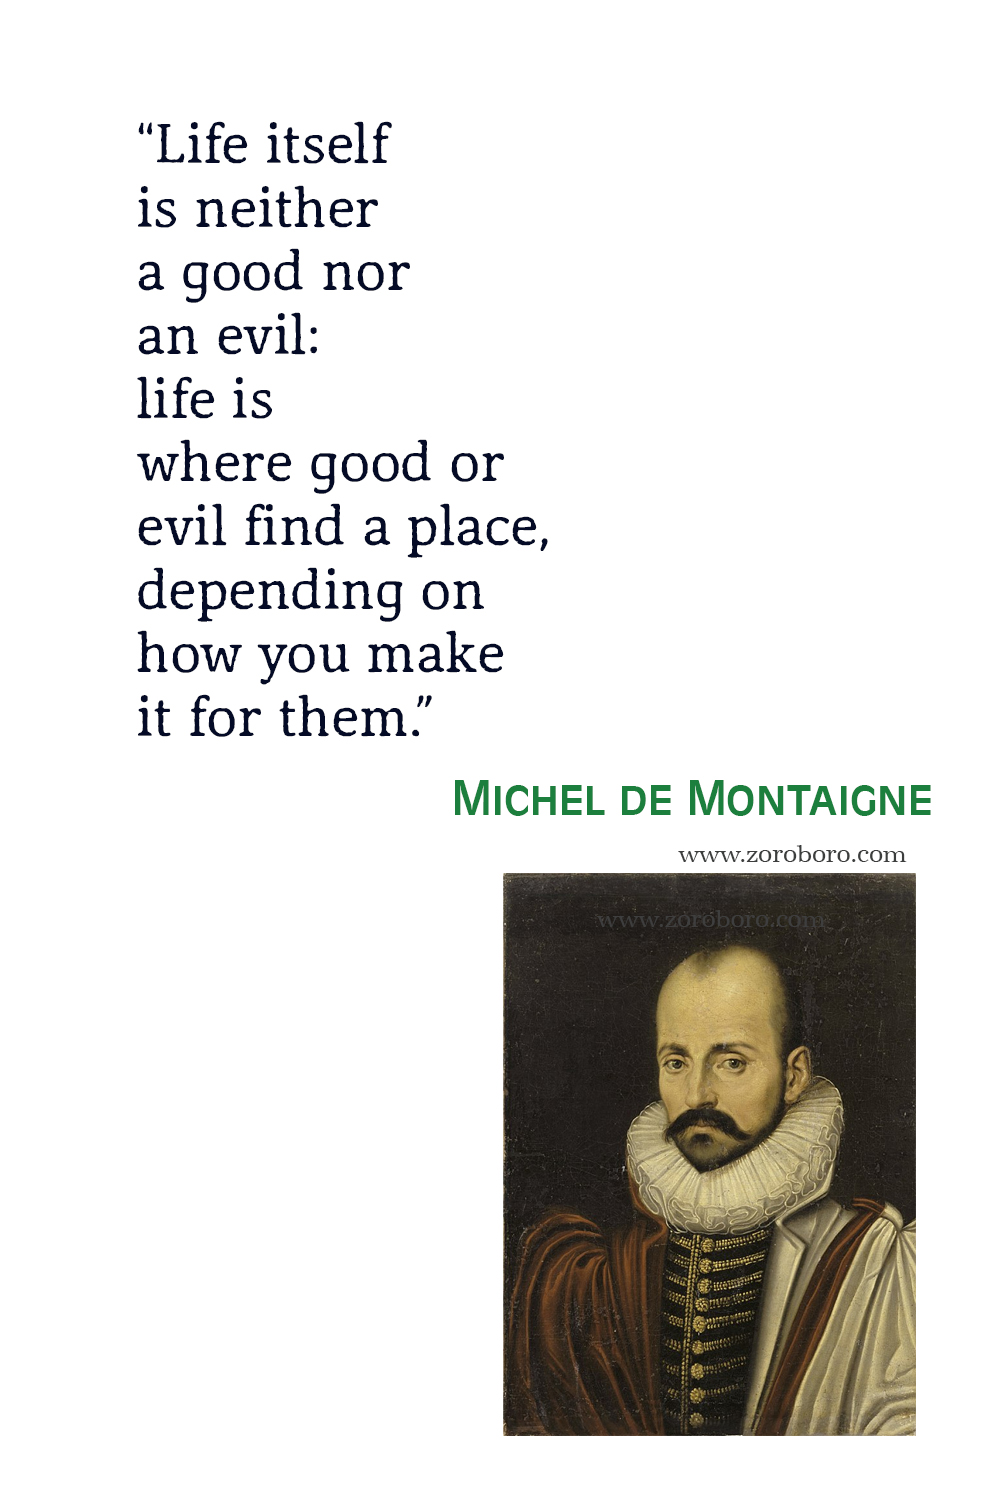 Michel de Montaigne Quotes, Michel de Montaigne Poems, Michel de Montaigne Poetry, Michel de Montaigne Books Quotes